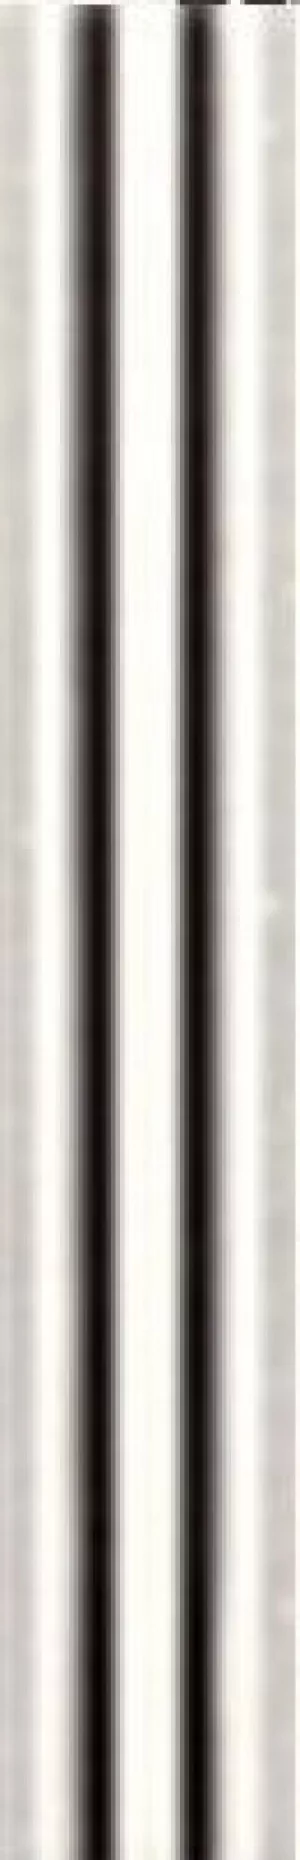 Плитка LB-Ceramics 40x6 Токио бордюр черно-белый полоска 1504-0119 глянцевая